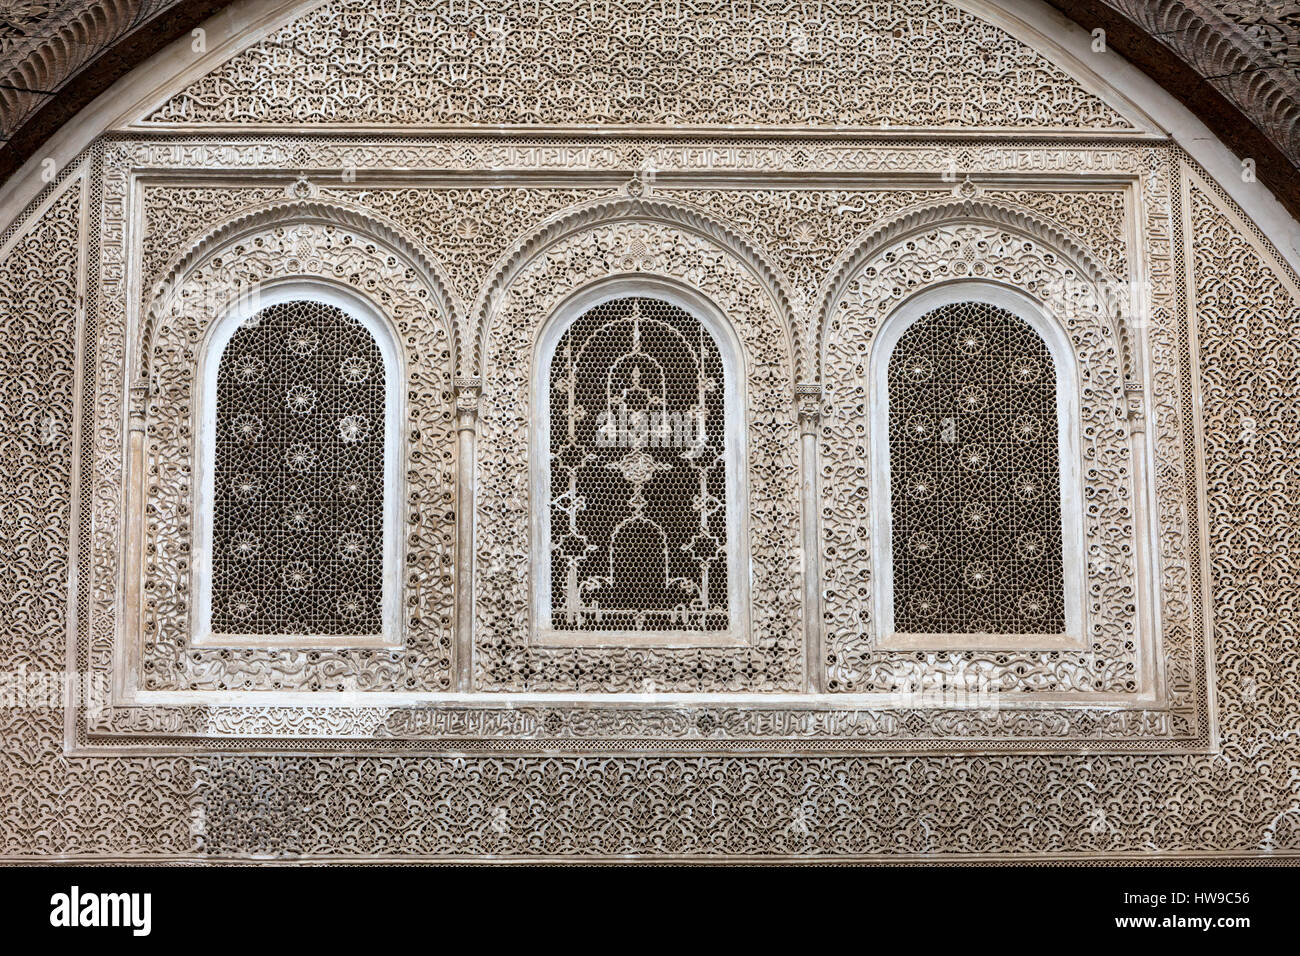 Fes, Marocco. Decorazione a stucco con la calligrafia e design floreale, Attarine Medersa, Fes El-Bali. Foto Stock